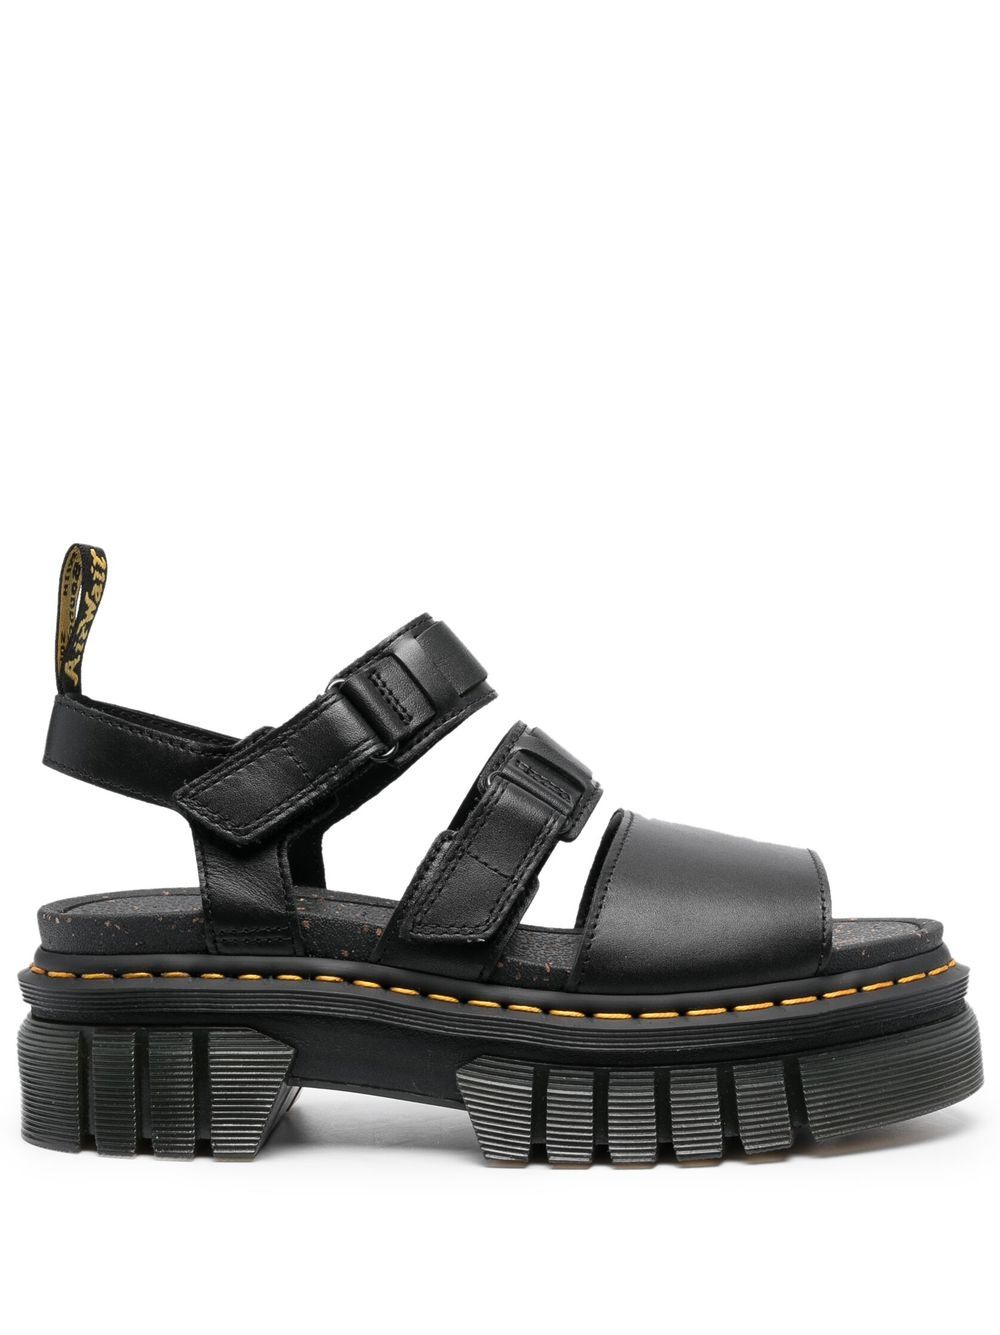 Image 1 of Dr. Martens Ricki leather platform sandals